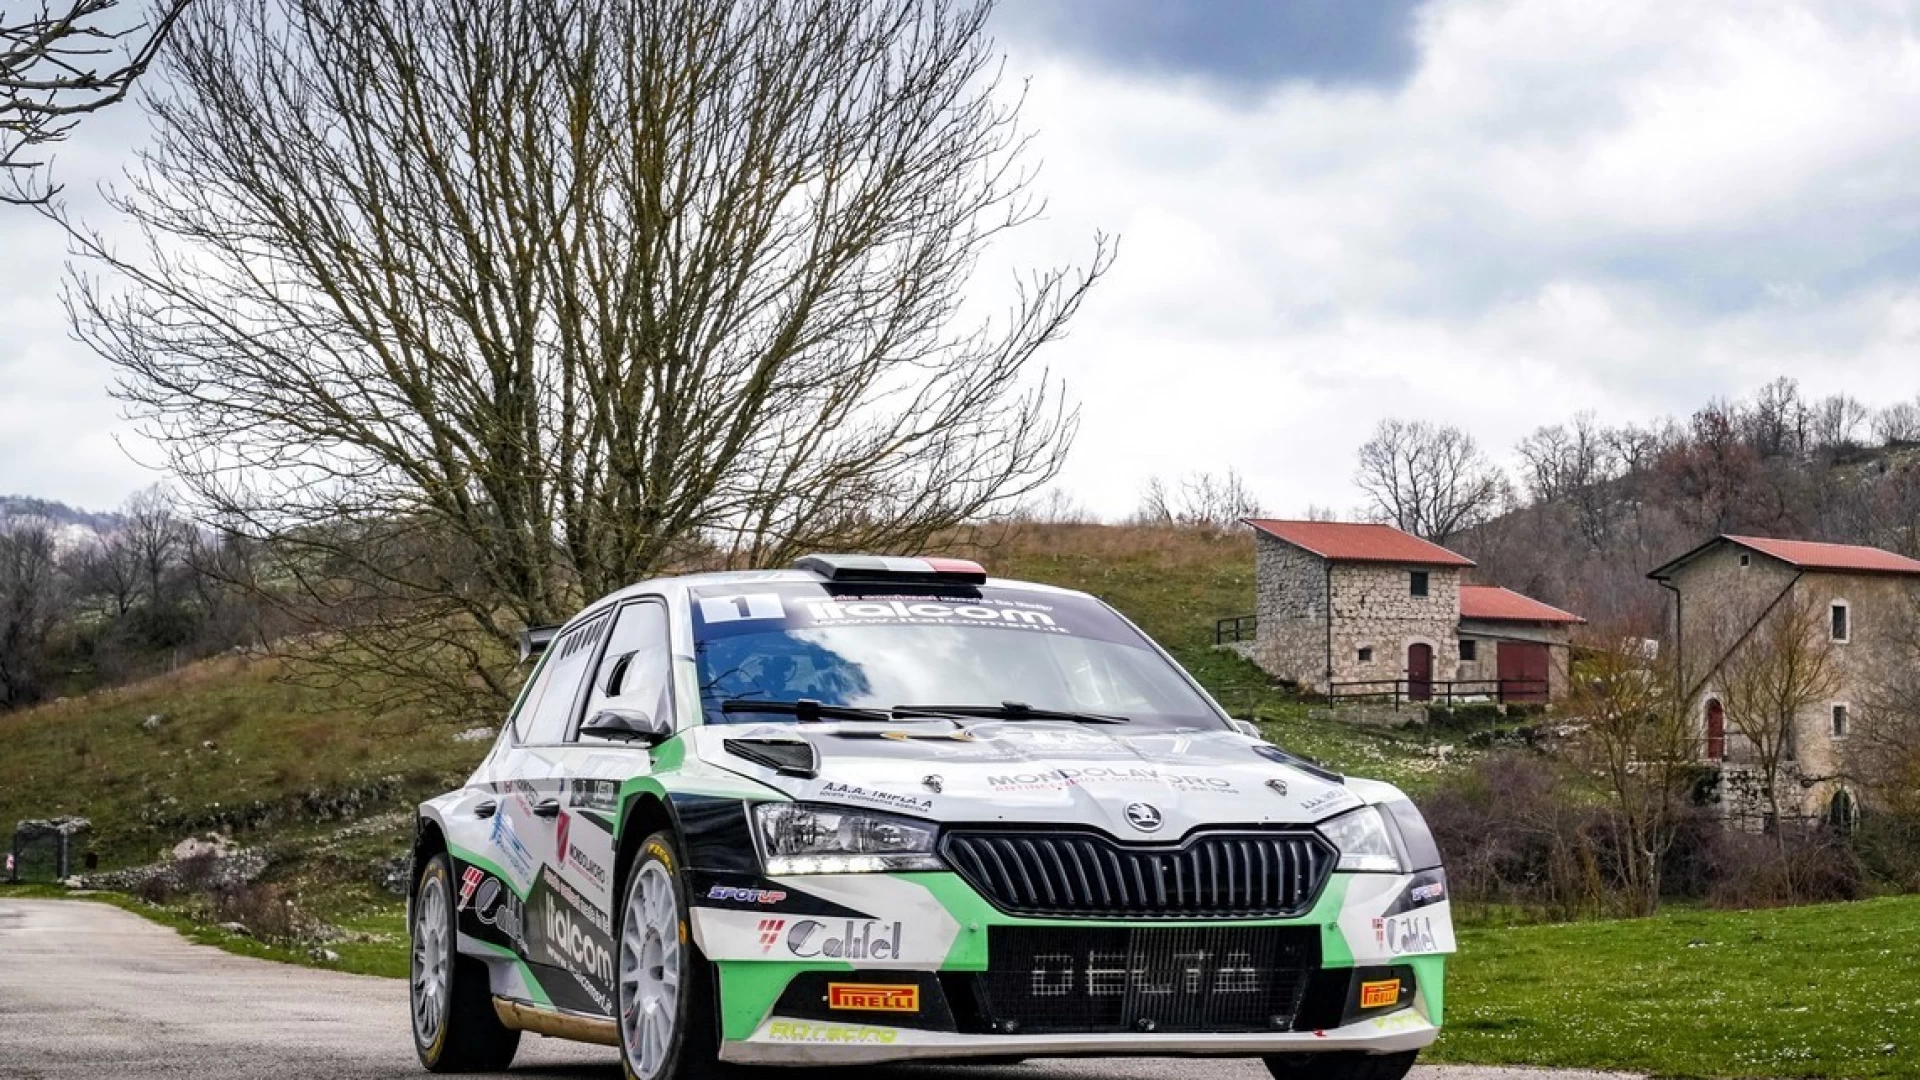 Trofeo Italiano Rally, Giuseppe Testa al Rally della Marca  Per il driver cercese voglia di dare continuità all'exploit di Cassino